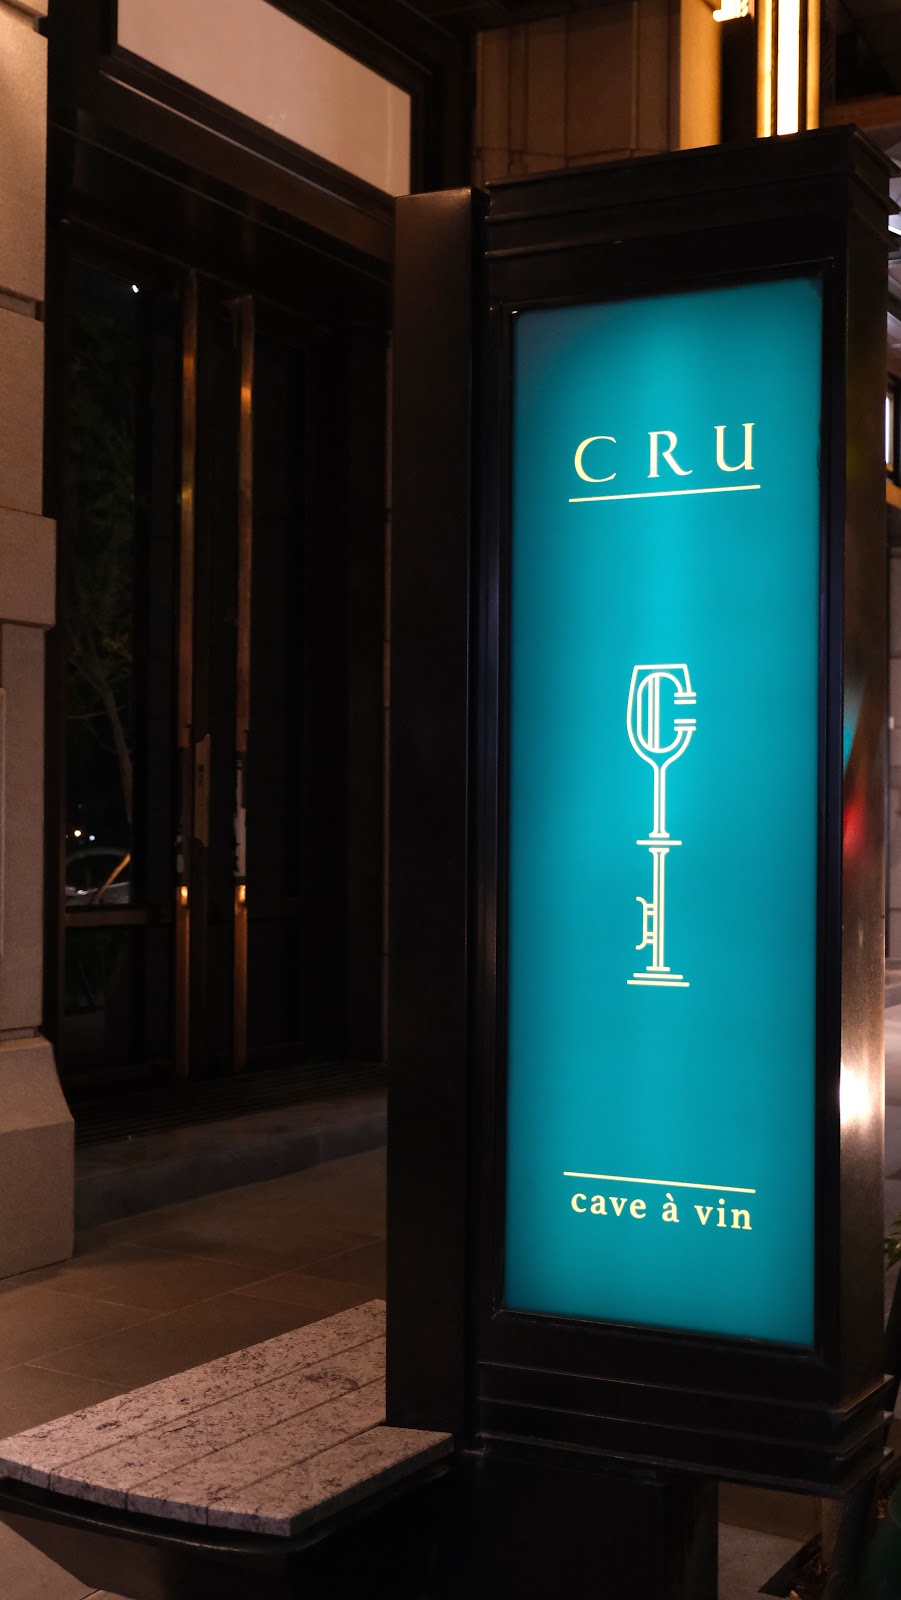 【台中西屯酒吧推薦】CRU酒窖 /CRU cave a vin 台中七期豪宅酒窖 高級質感香氛空間品飲葡萄酒、茶香調酒